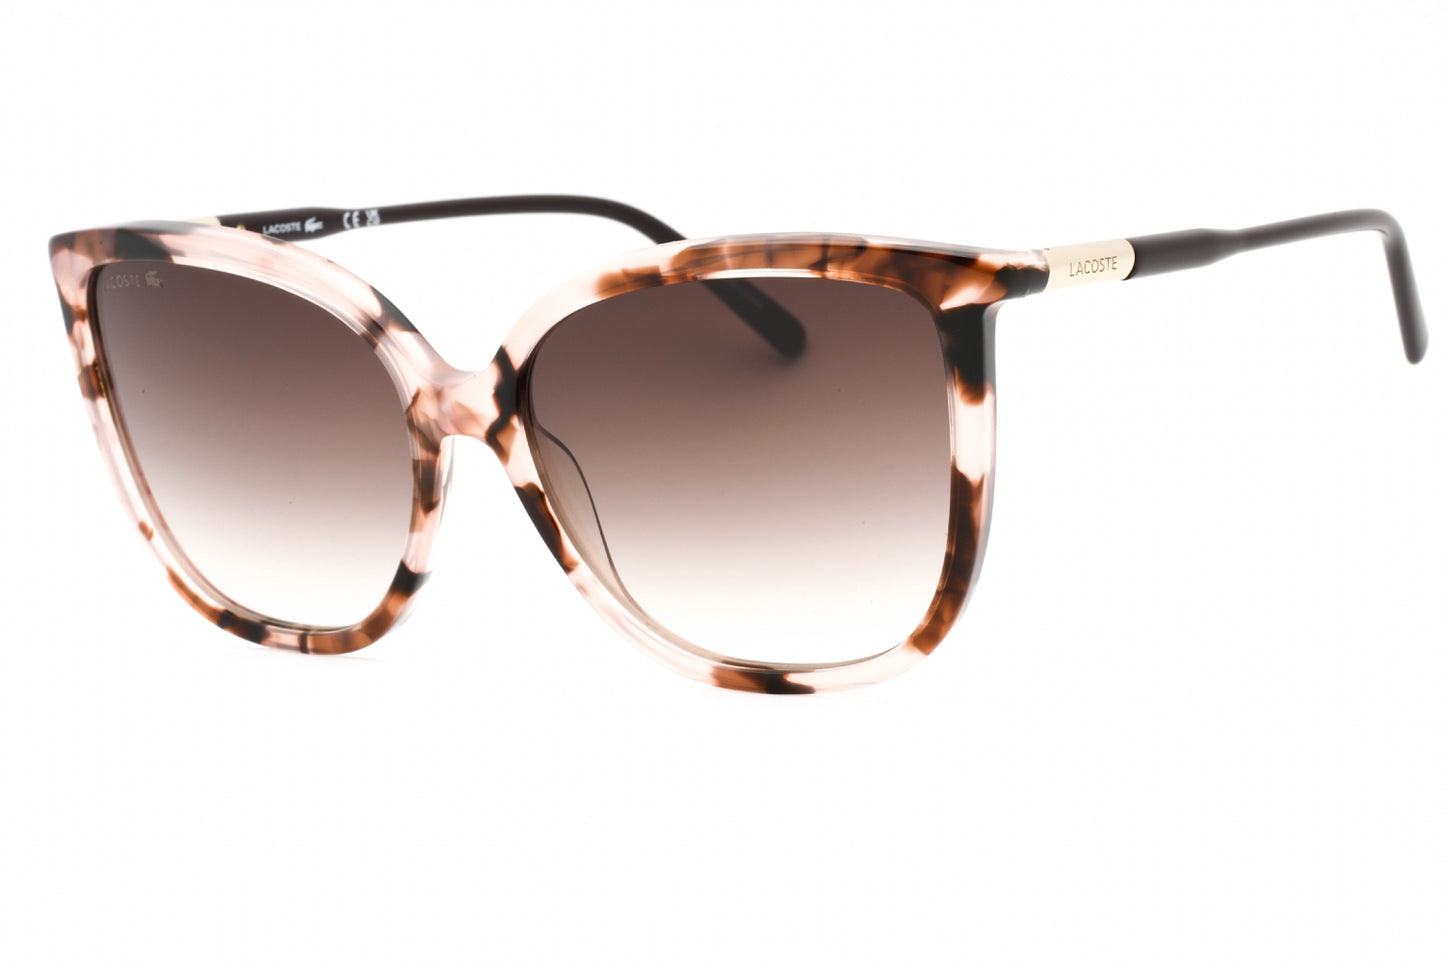 Lacoste L963S-610 59mm New Sunglasses